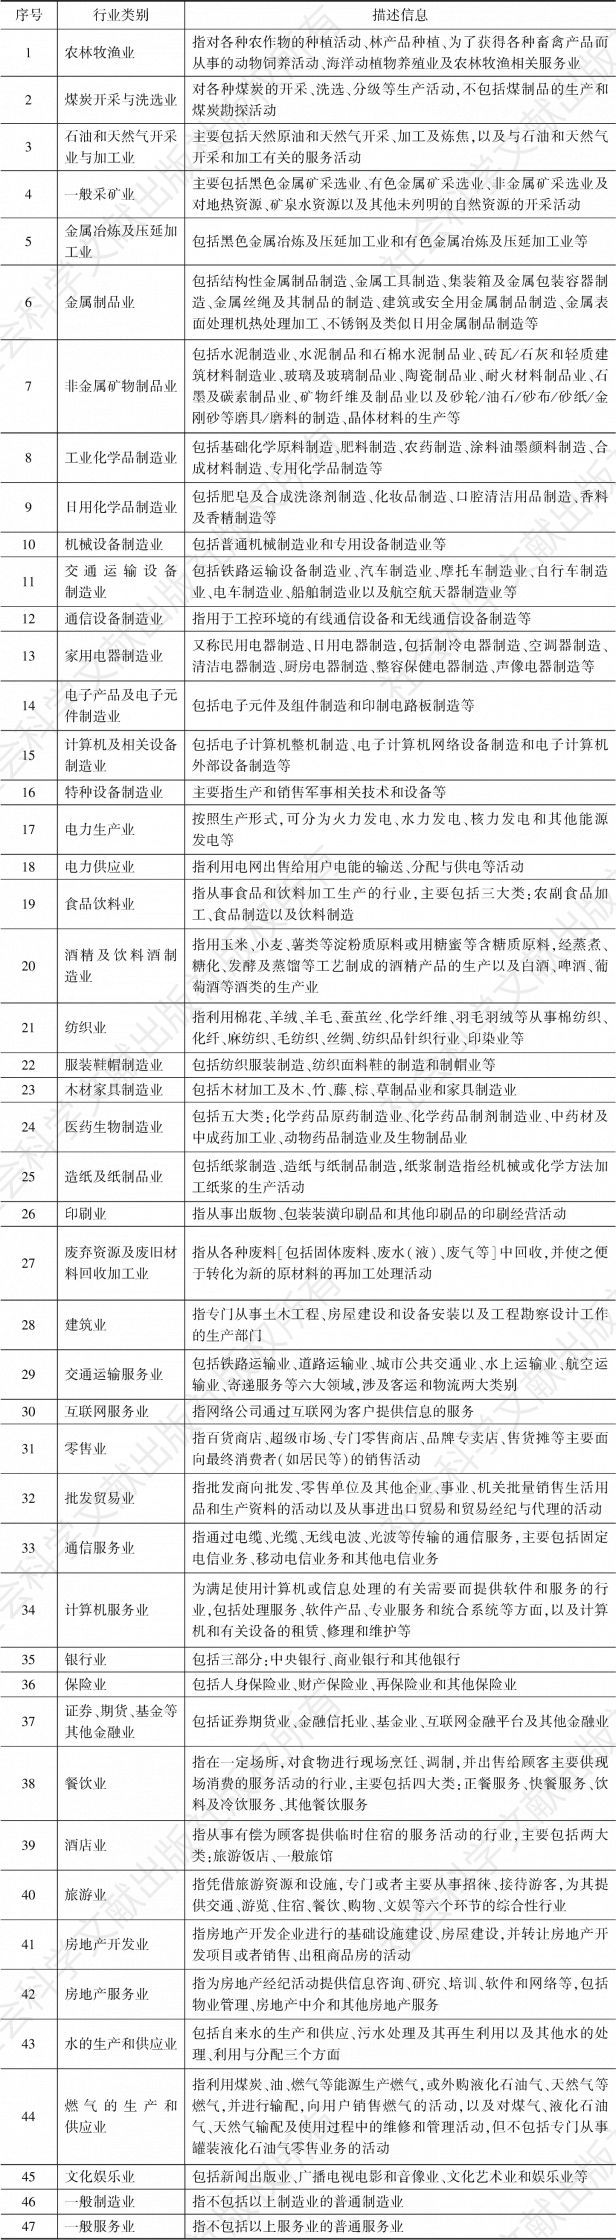 表1 中国企业社会责任发展指数行业划分标准